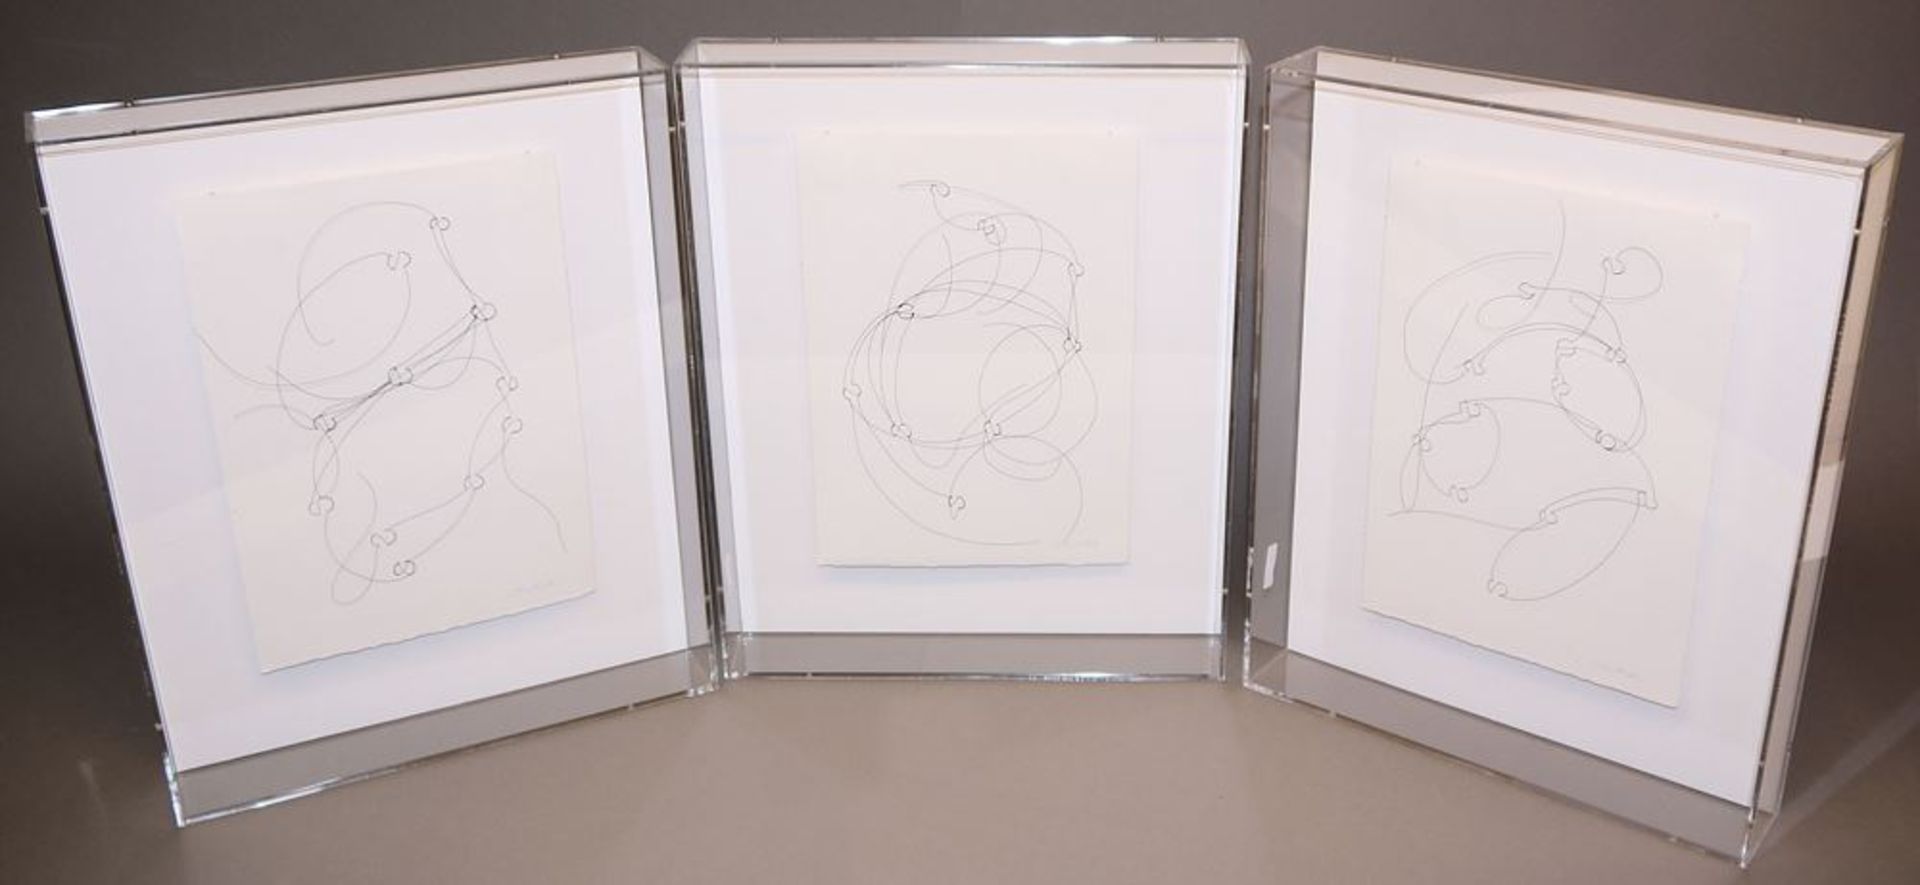 Brigitte Schwacke, "Innere Welten", 3 signierte Arbeiten aus legiertem Draht, je in Plexiglaskasten